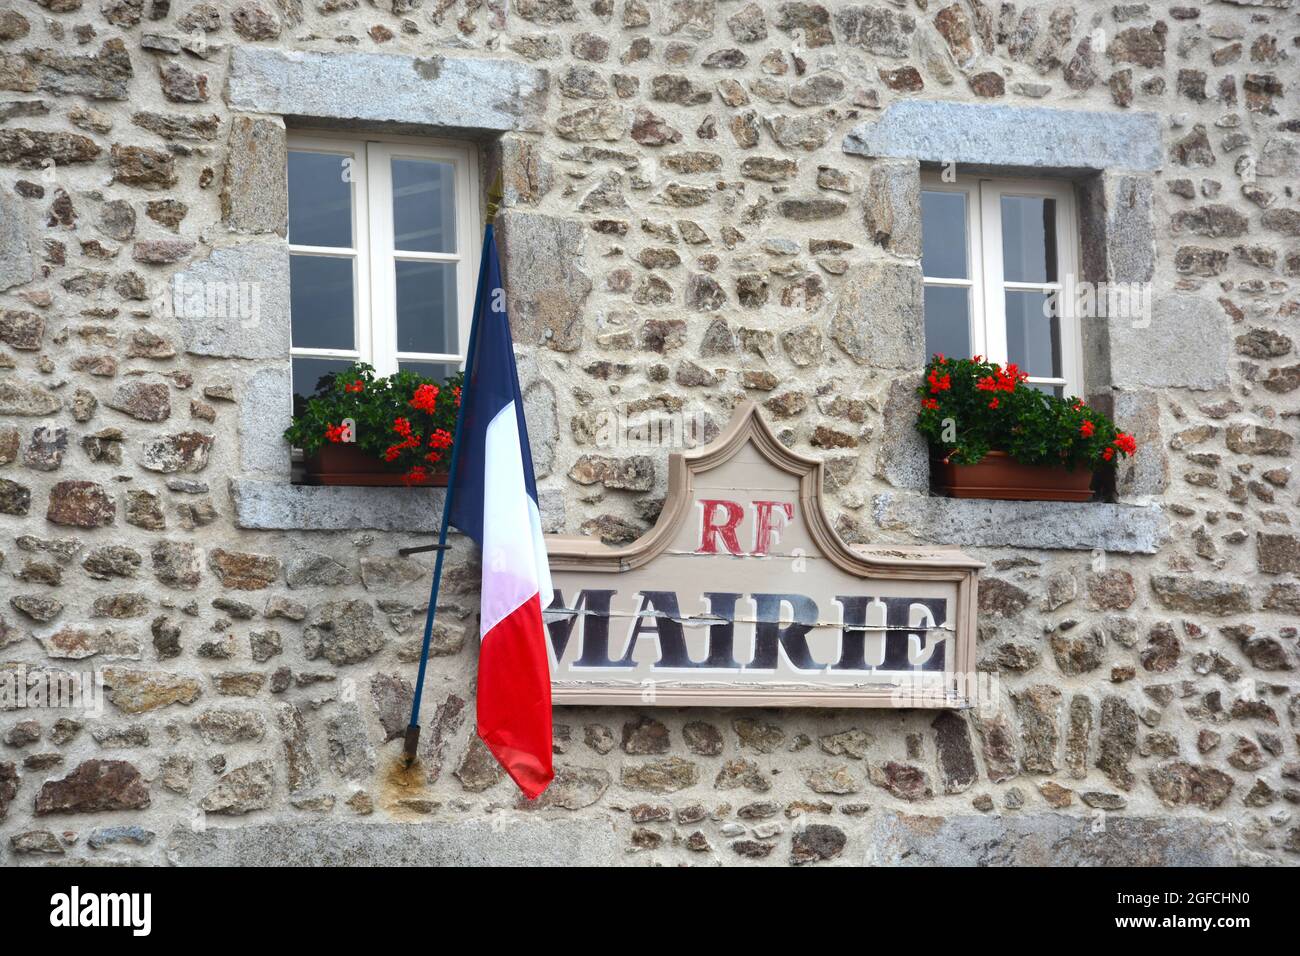 cityhall of a rural village in Livradois-Forez, Chambon sur Dolore, Puy-de-Dome, Auvergne-Rhone-Alpes, France Stock Photo